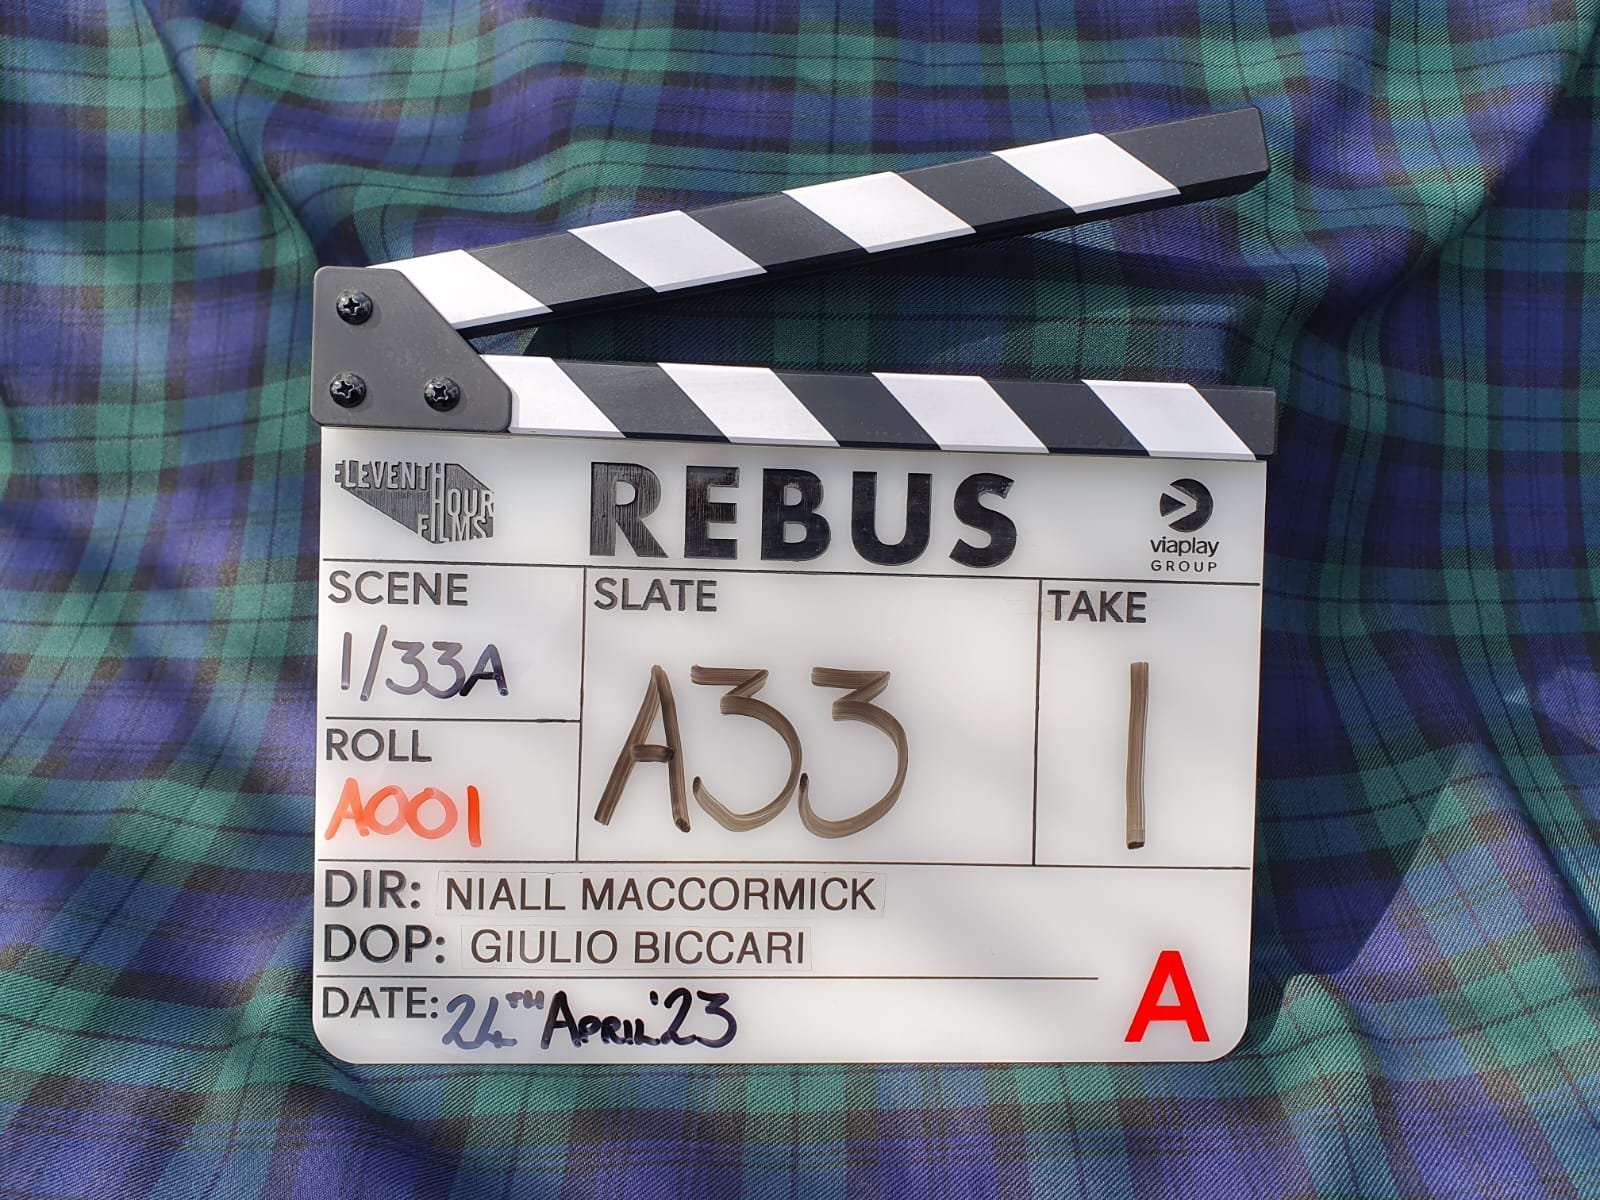 Fler skådespelare ansluter till Rebus – Viaplays brittiska satsning